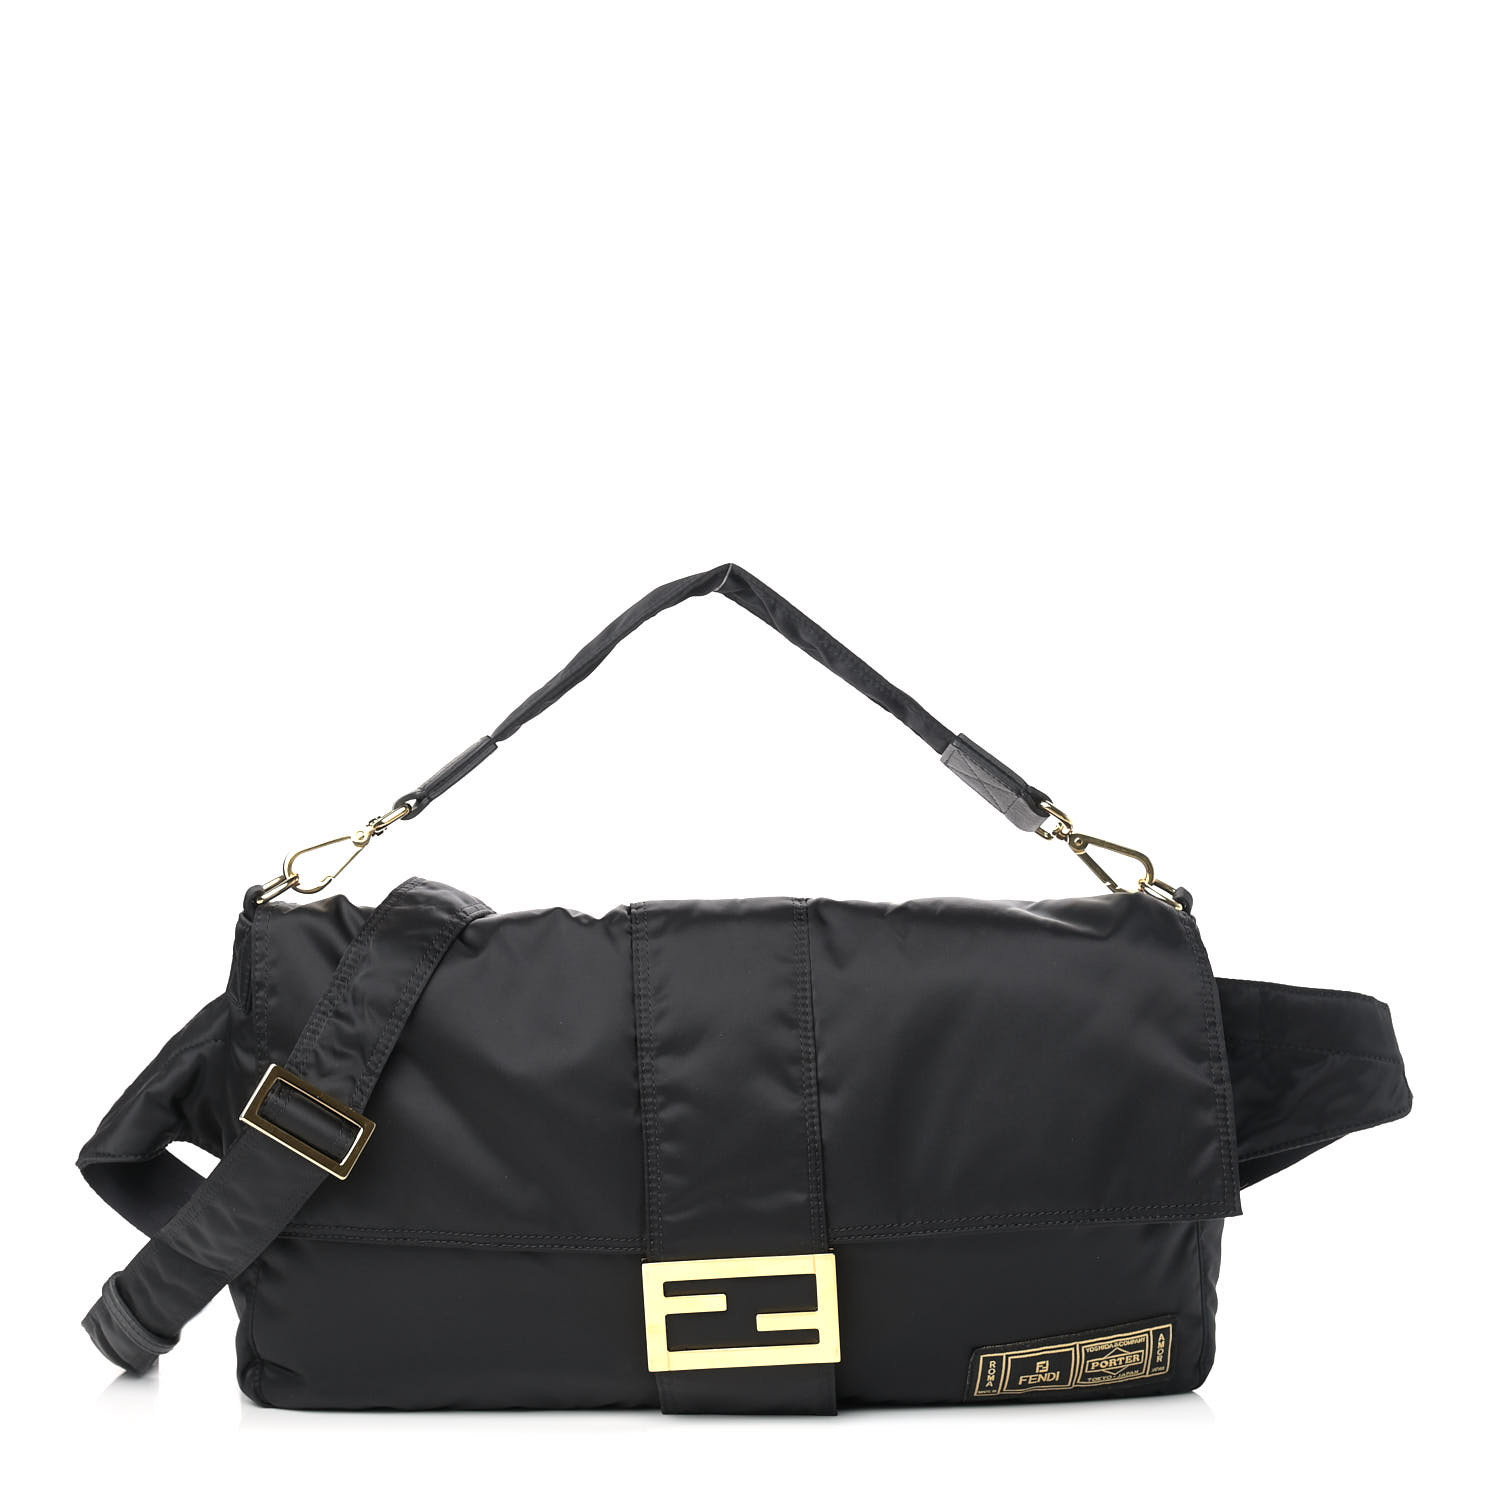 image of FENDI X PORTER Nylon Regular Belt Baguette Bag in the color Black by FASHIONPHILE